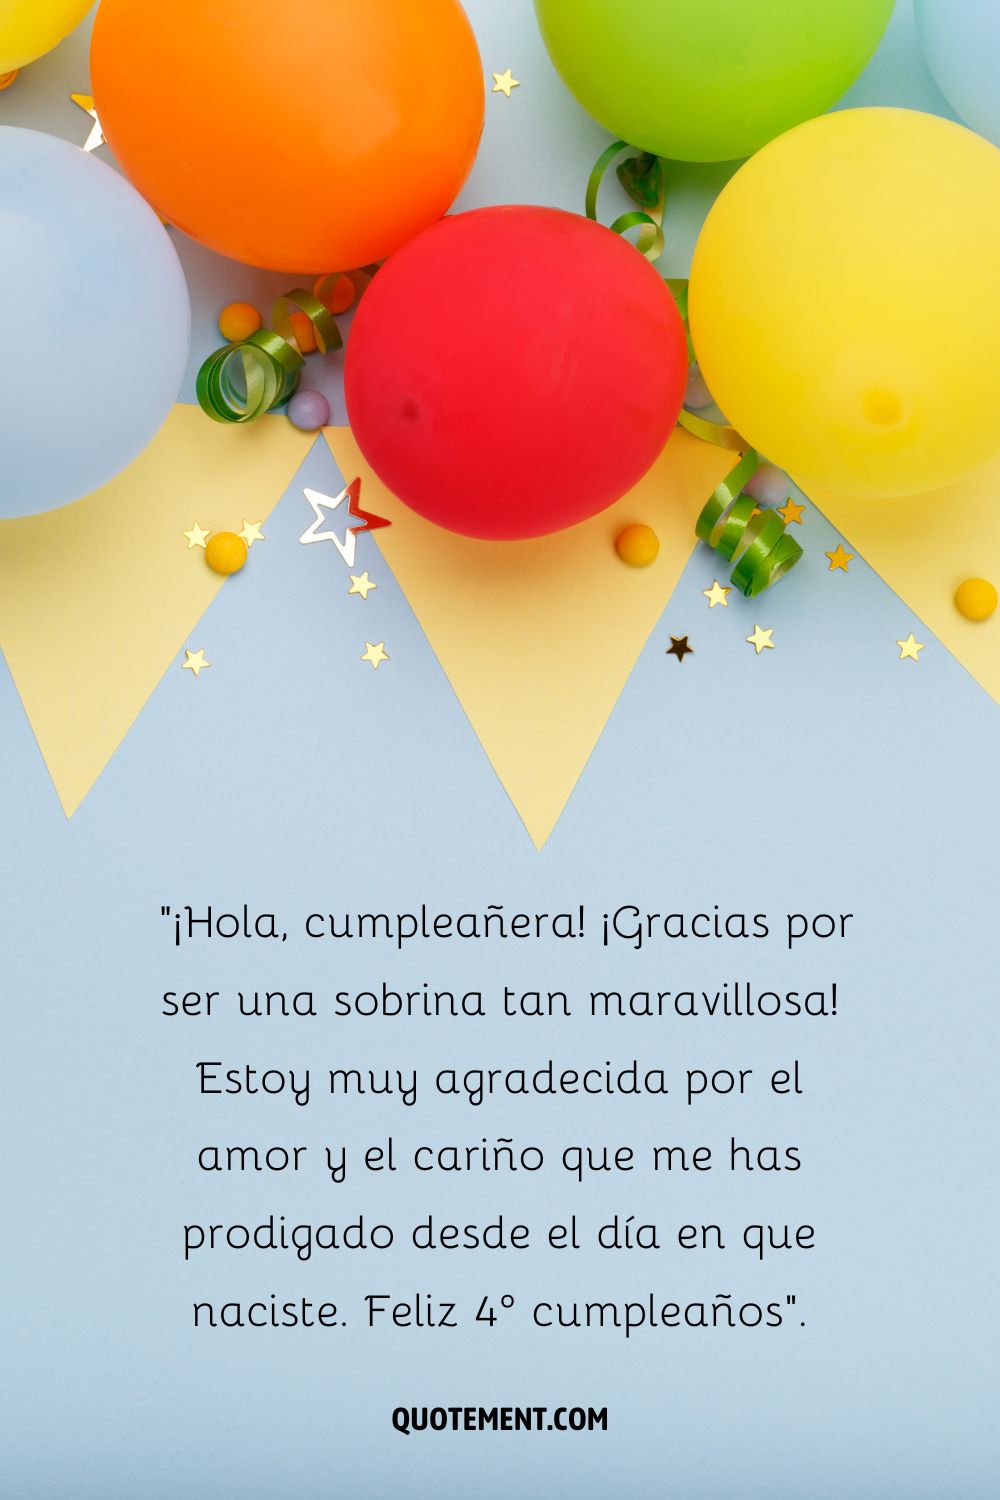 feliz 4 cumpleaños sobrina imagen representada por globos de colores